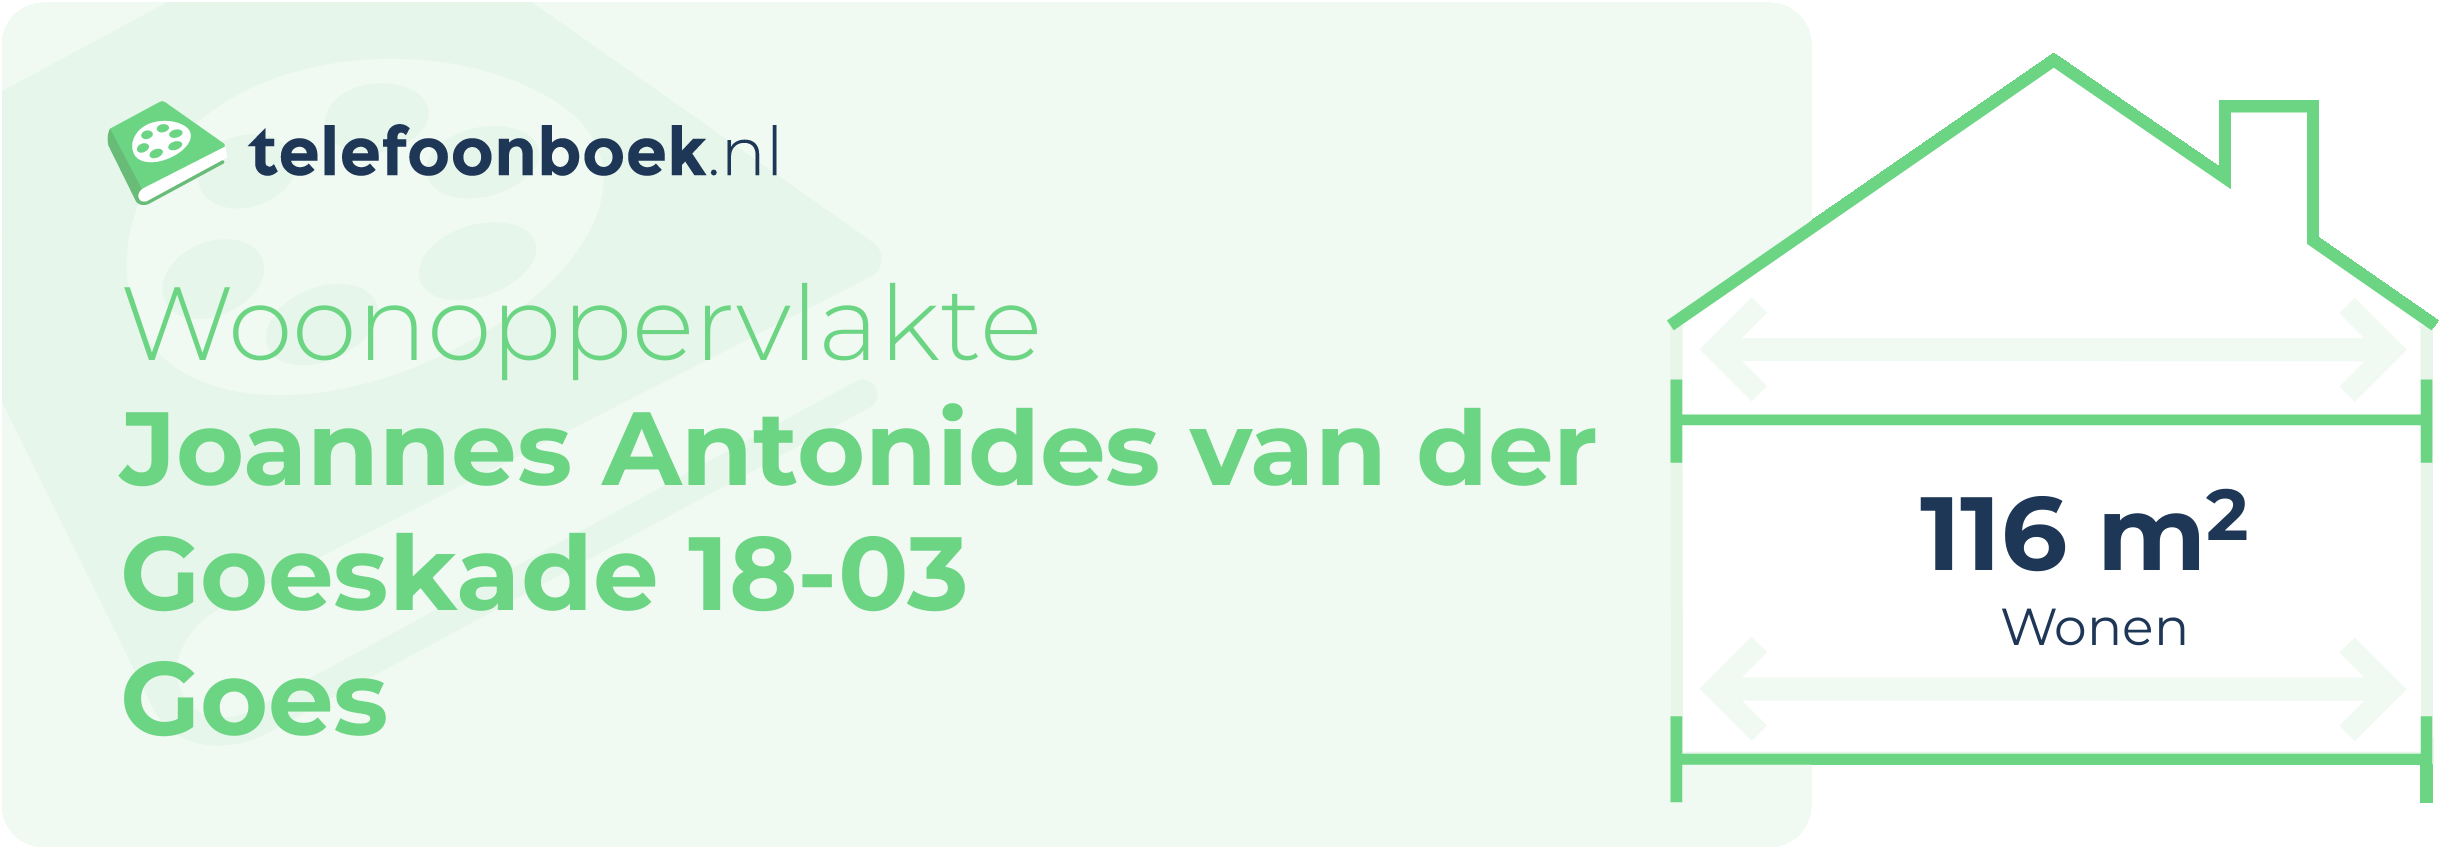 Woonoppervlakte Joannes Antonides Van Der Goeskade 18-03 Goes